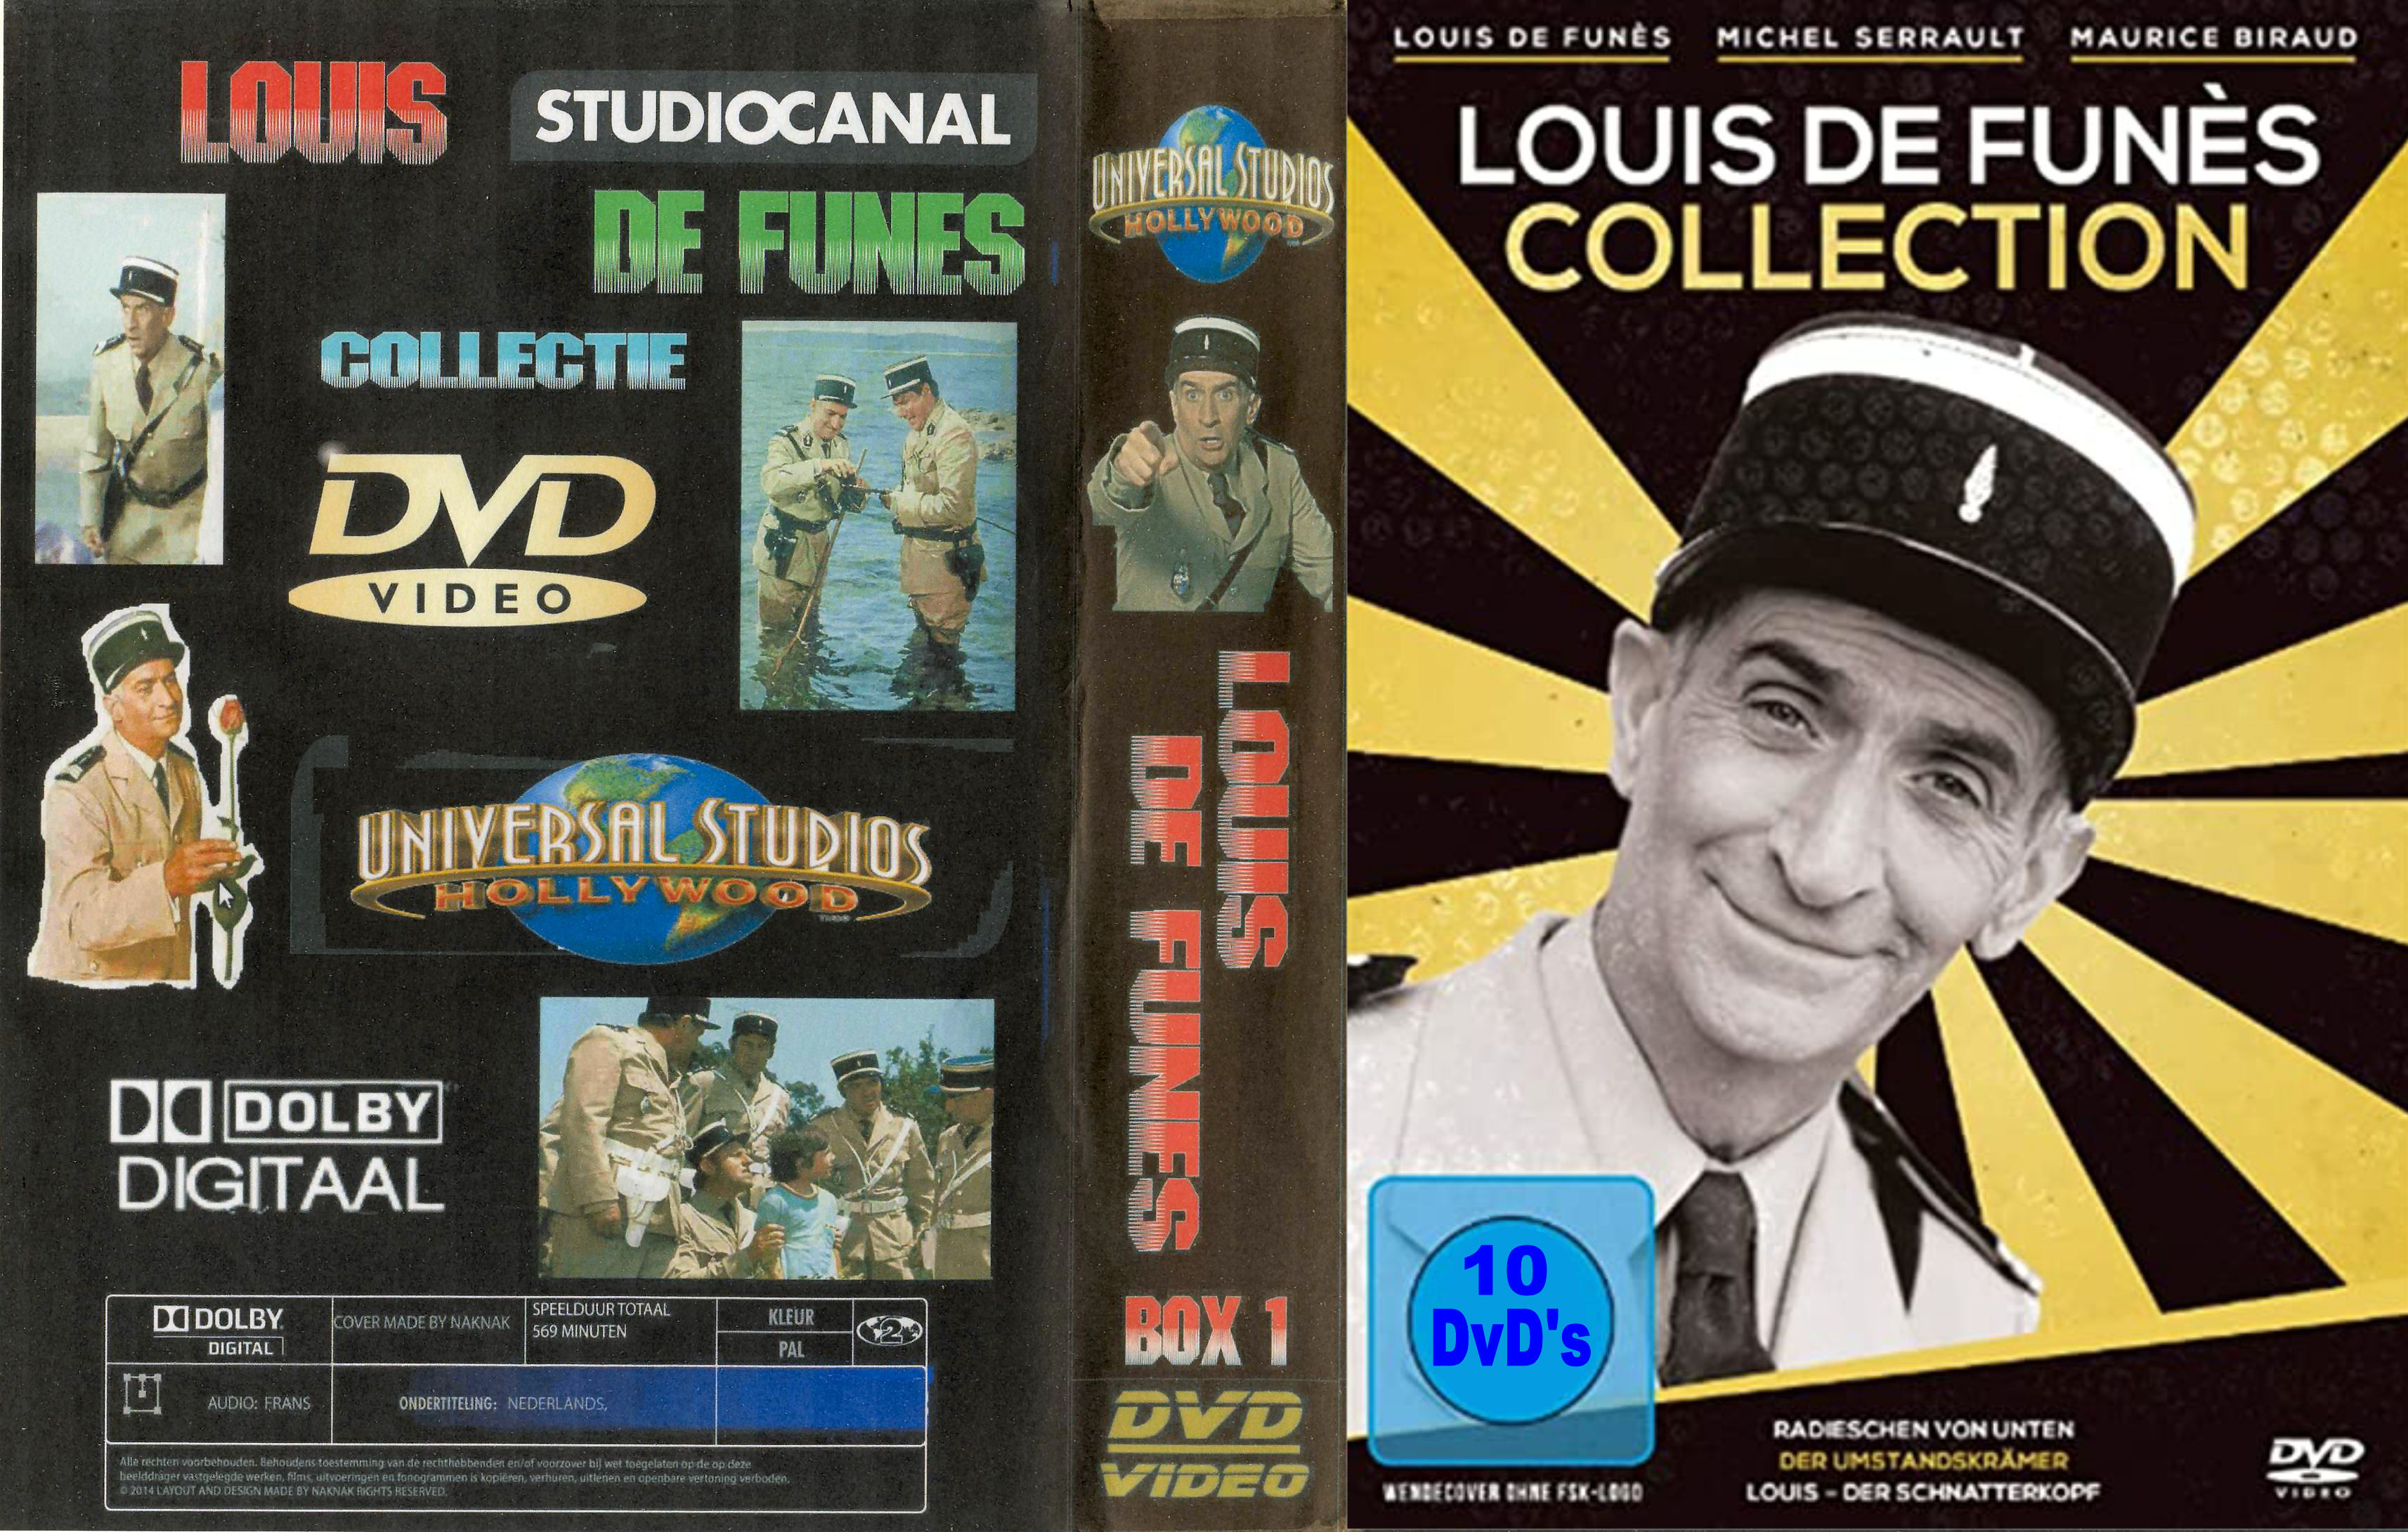 Louis de Funes Collectie ( 30 DvD's ) - DvD 5